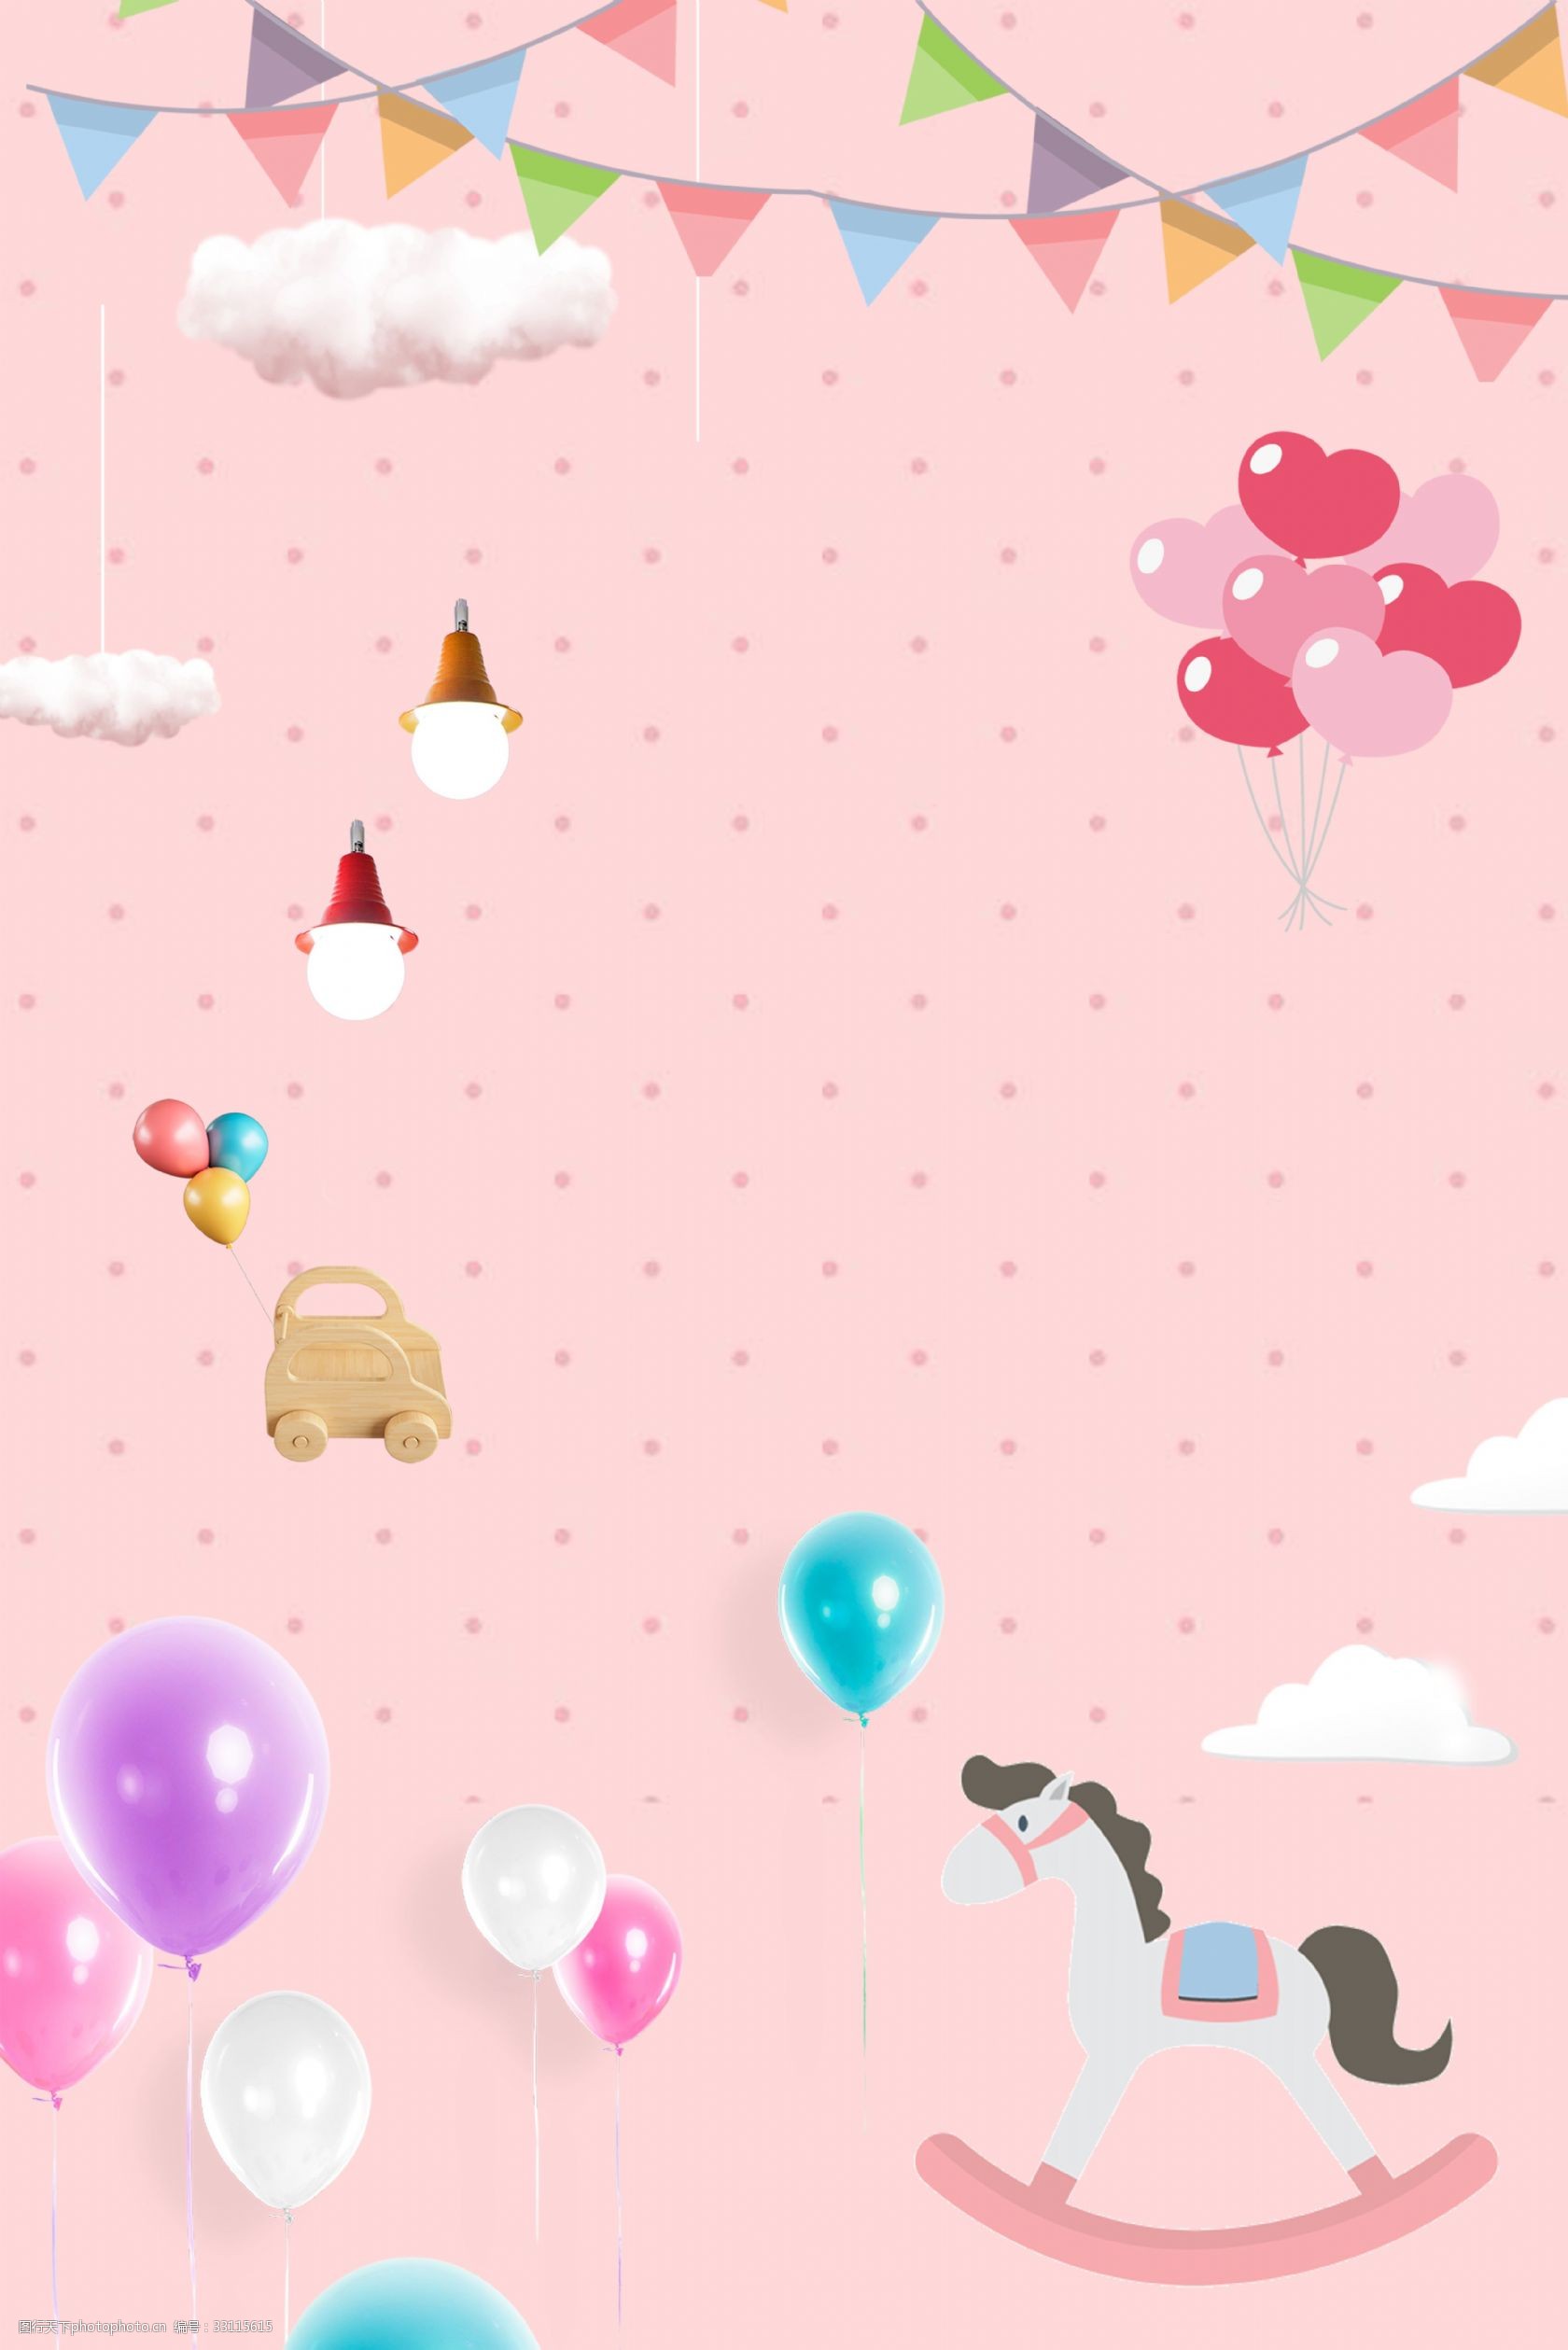 关键词:61儿童节粉色可爱海报背景 61 儿童节 粉色 清新 撞色气球